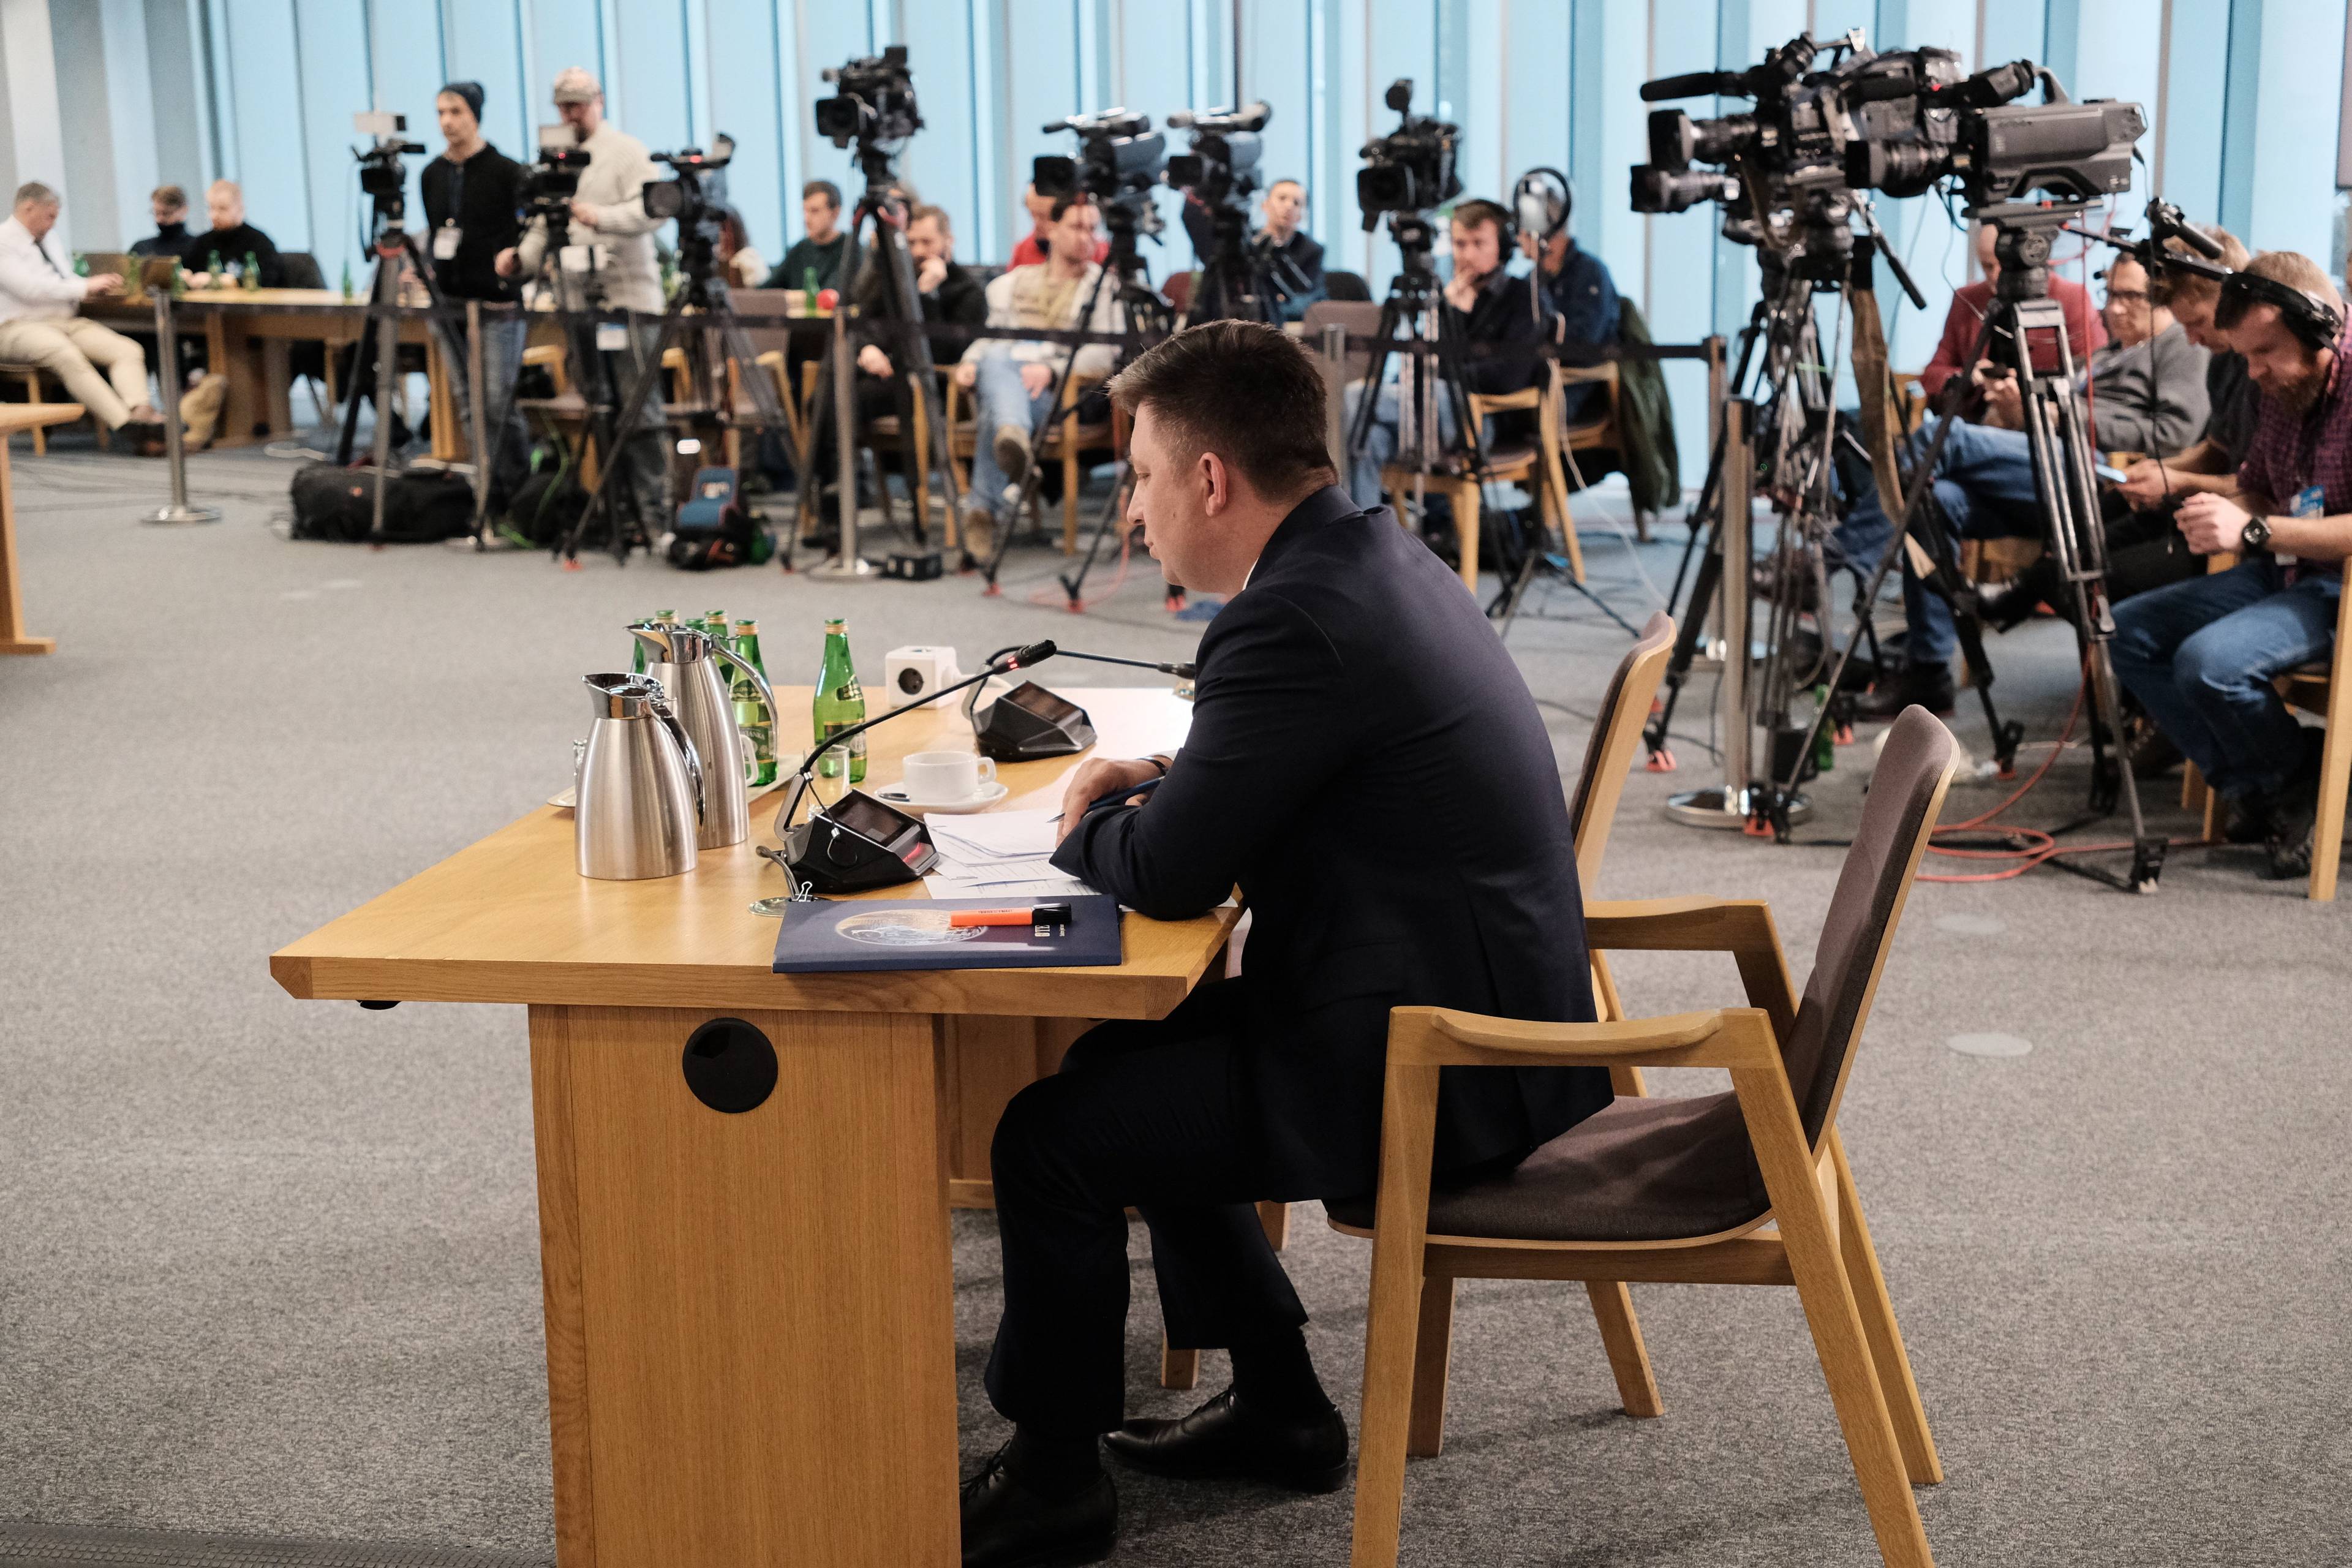 Michał Dworczyk podczas przesłuchania przez sejmową komisję śledczą ds. wyborów kopertowych. Dworczyk w centrum kadru, siedzi przy biurku. W tle rząd kamer telewizyjnych.